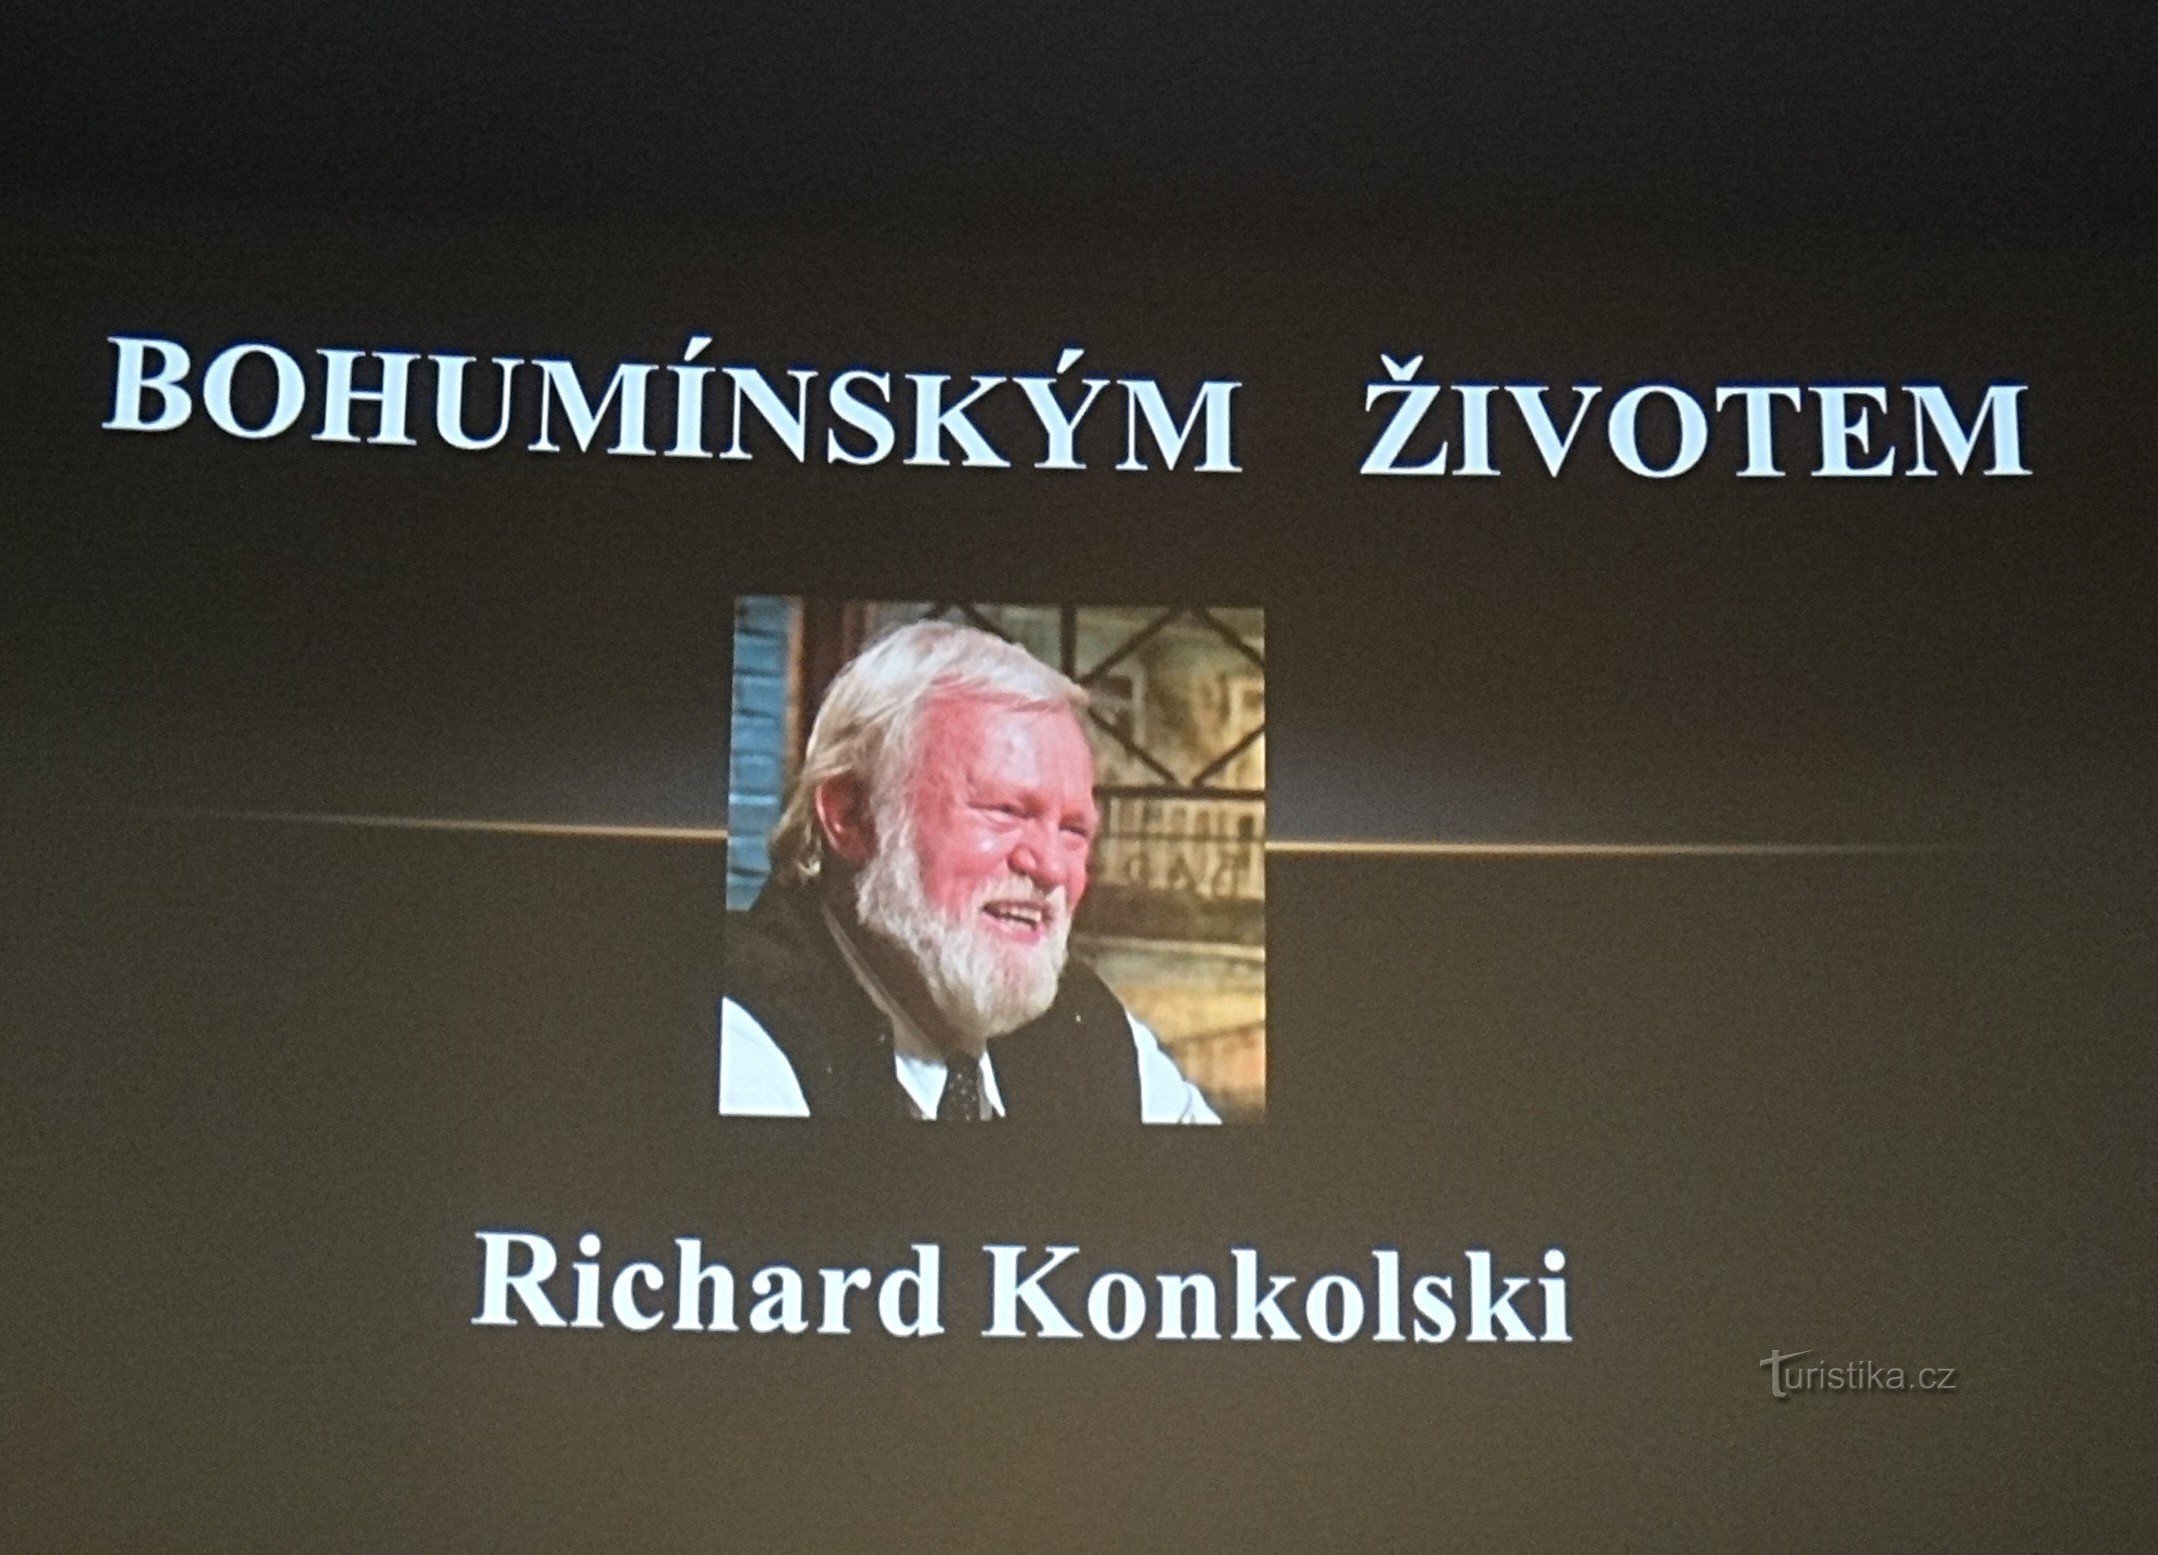 Richard Konkolski taler i biografen